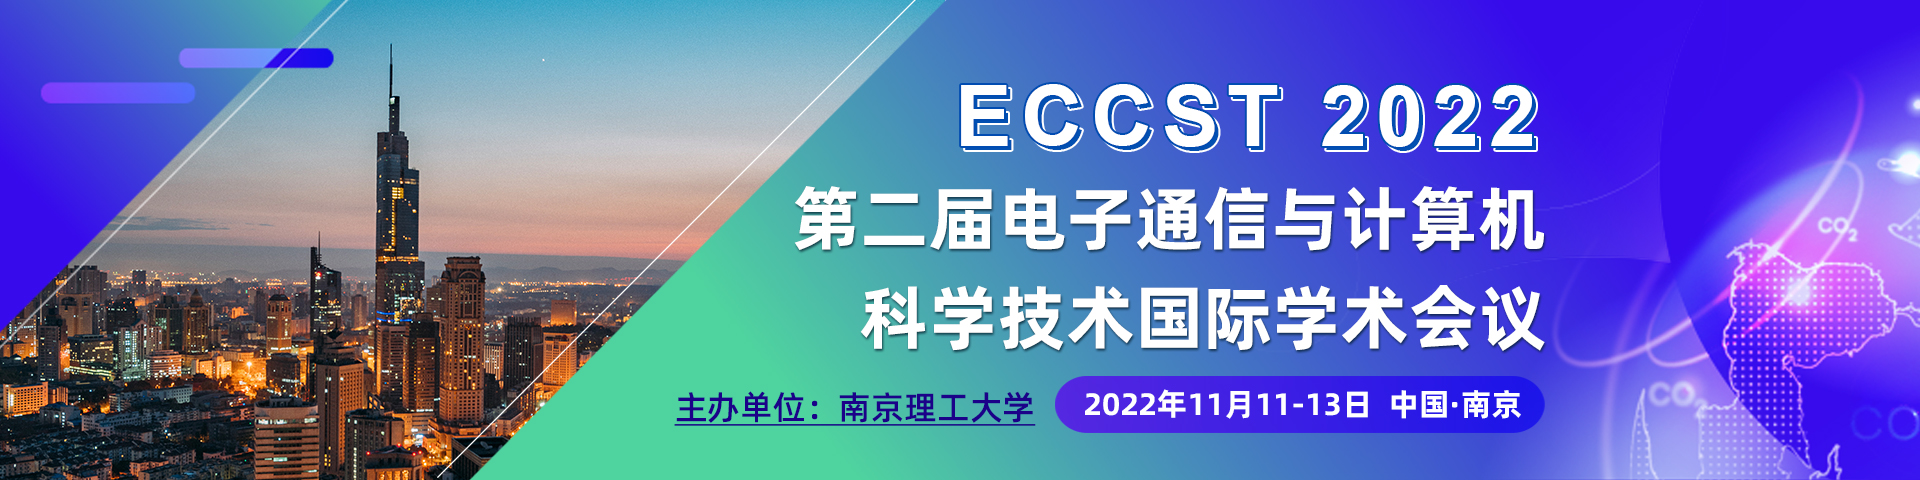 南京-11月-ECCST-上线平台1920x480.jpg